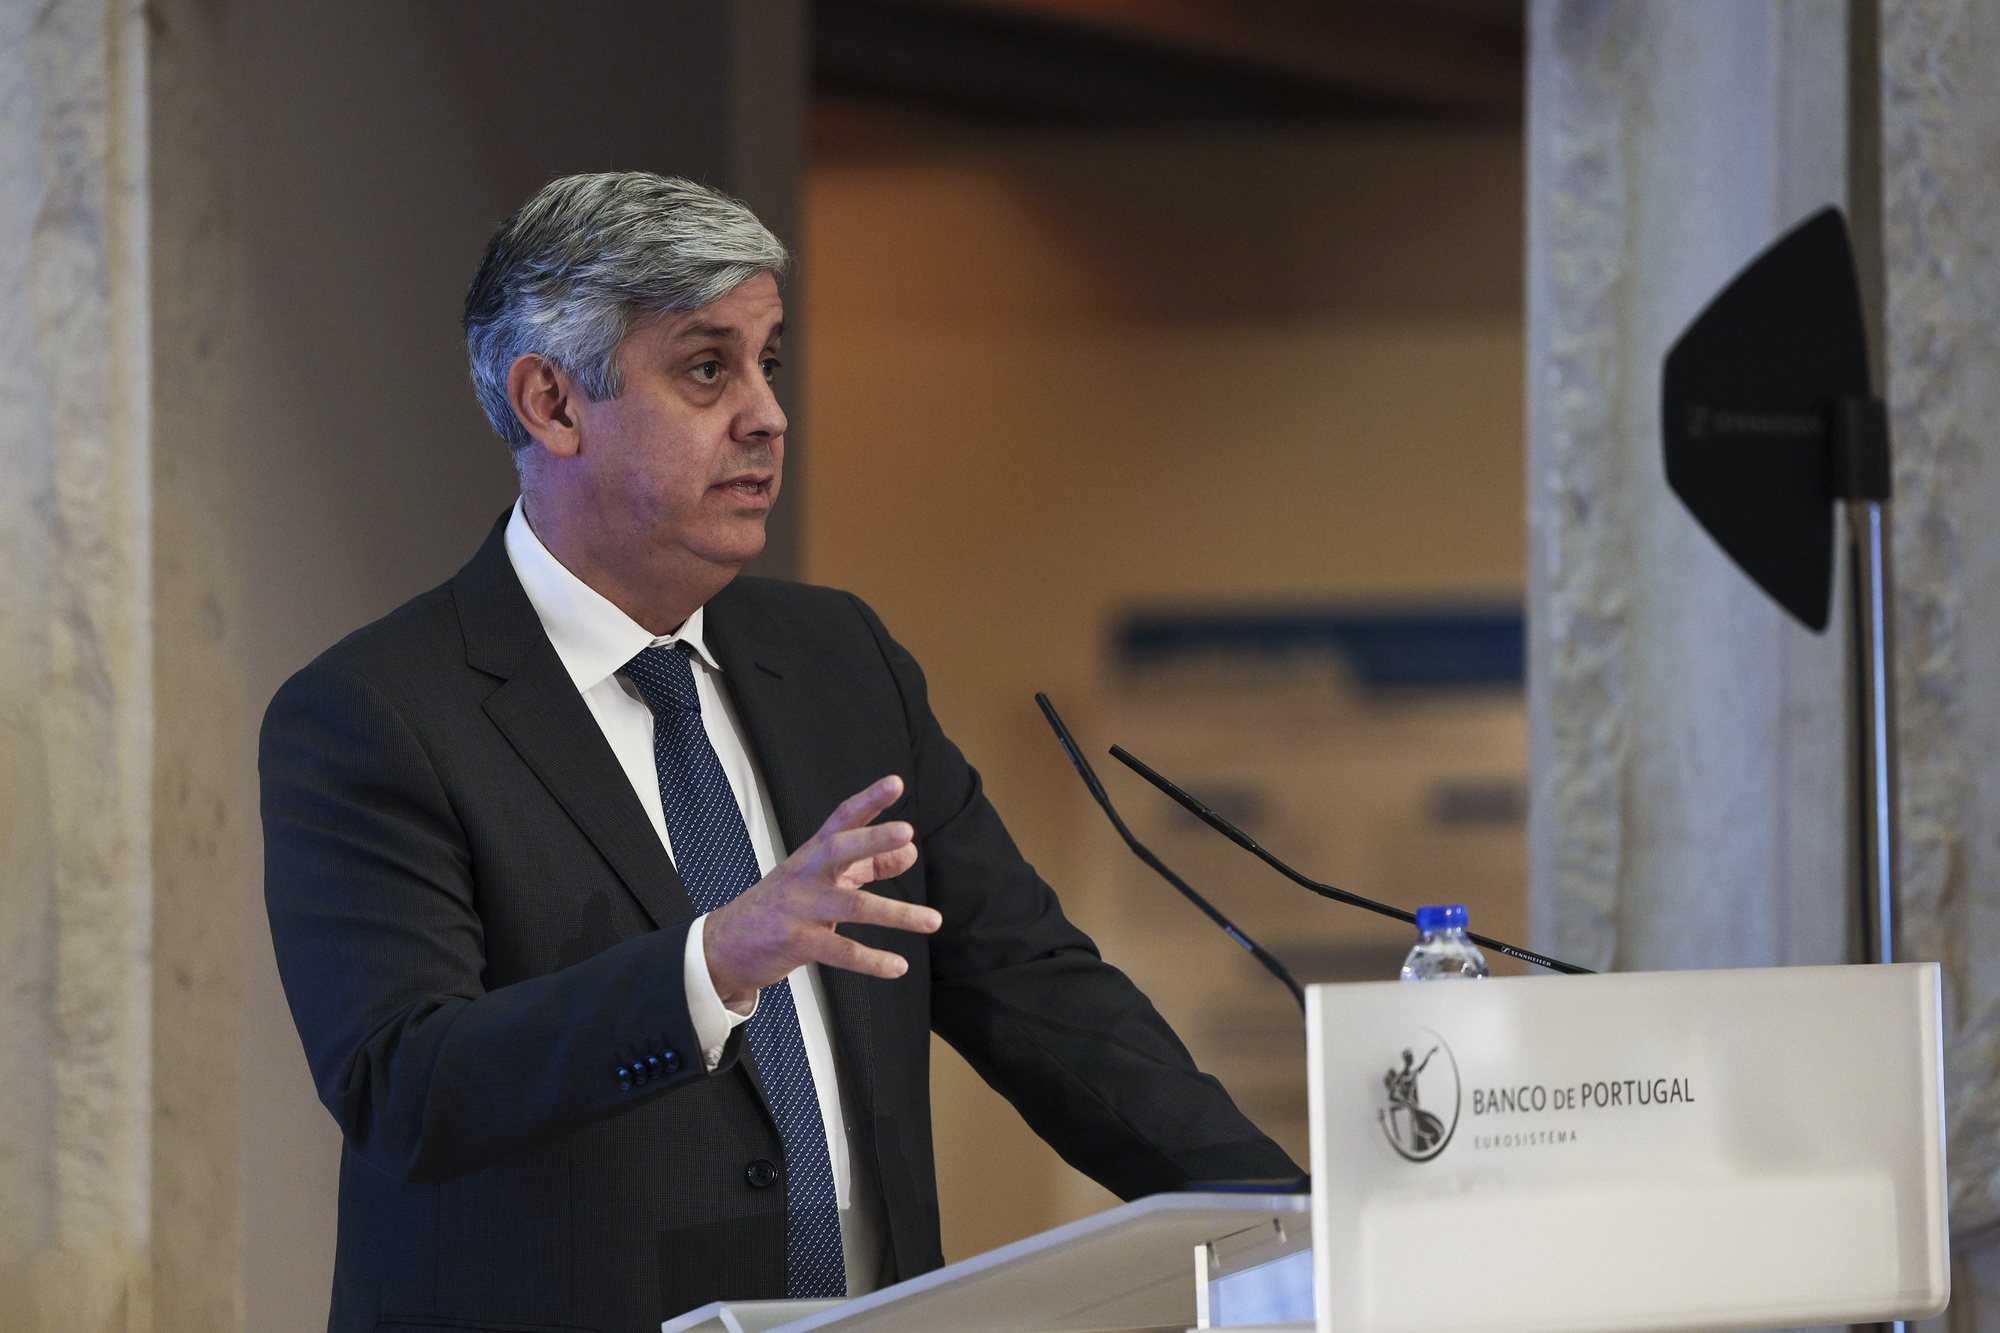 O Governador do Banco de Portugal, Mário Centeno, discursa durante a sessão de encerramento da 11.ª Conferência do Banco de Portugal “Desenvolvimento Económico Português no Espaço Europeu”,  realizada na sede em Lisboa, 14 de novembro de 2022.  MANUEL DE ALMEIDA/LUSA